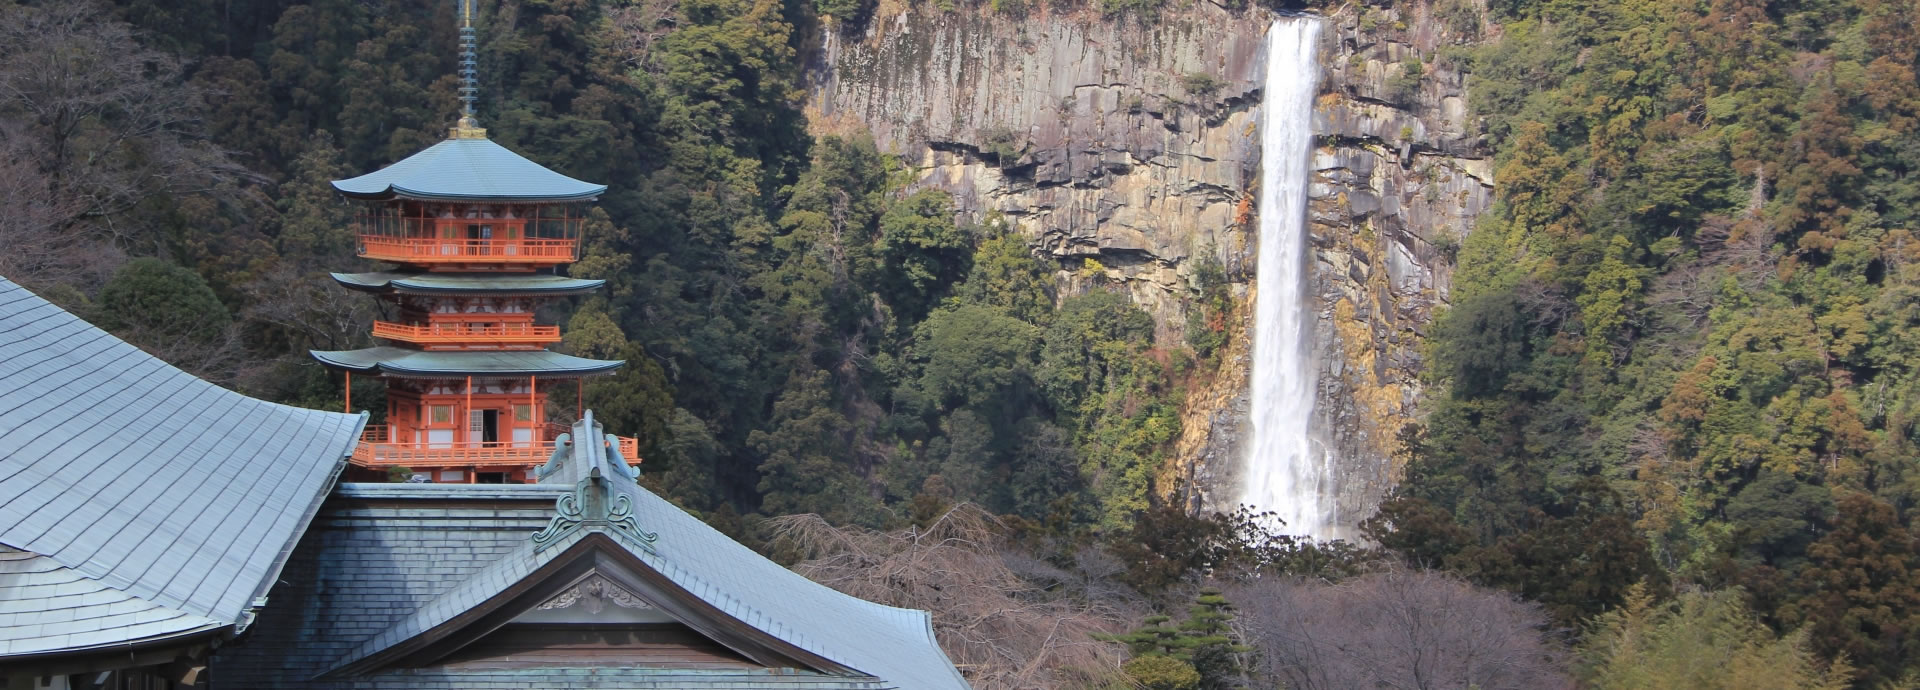 쿠마노코도, 나치노타키, 와카야마熊野古道, 那智の滝, 和歌山